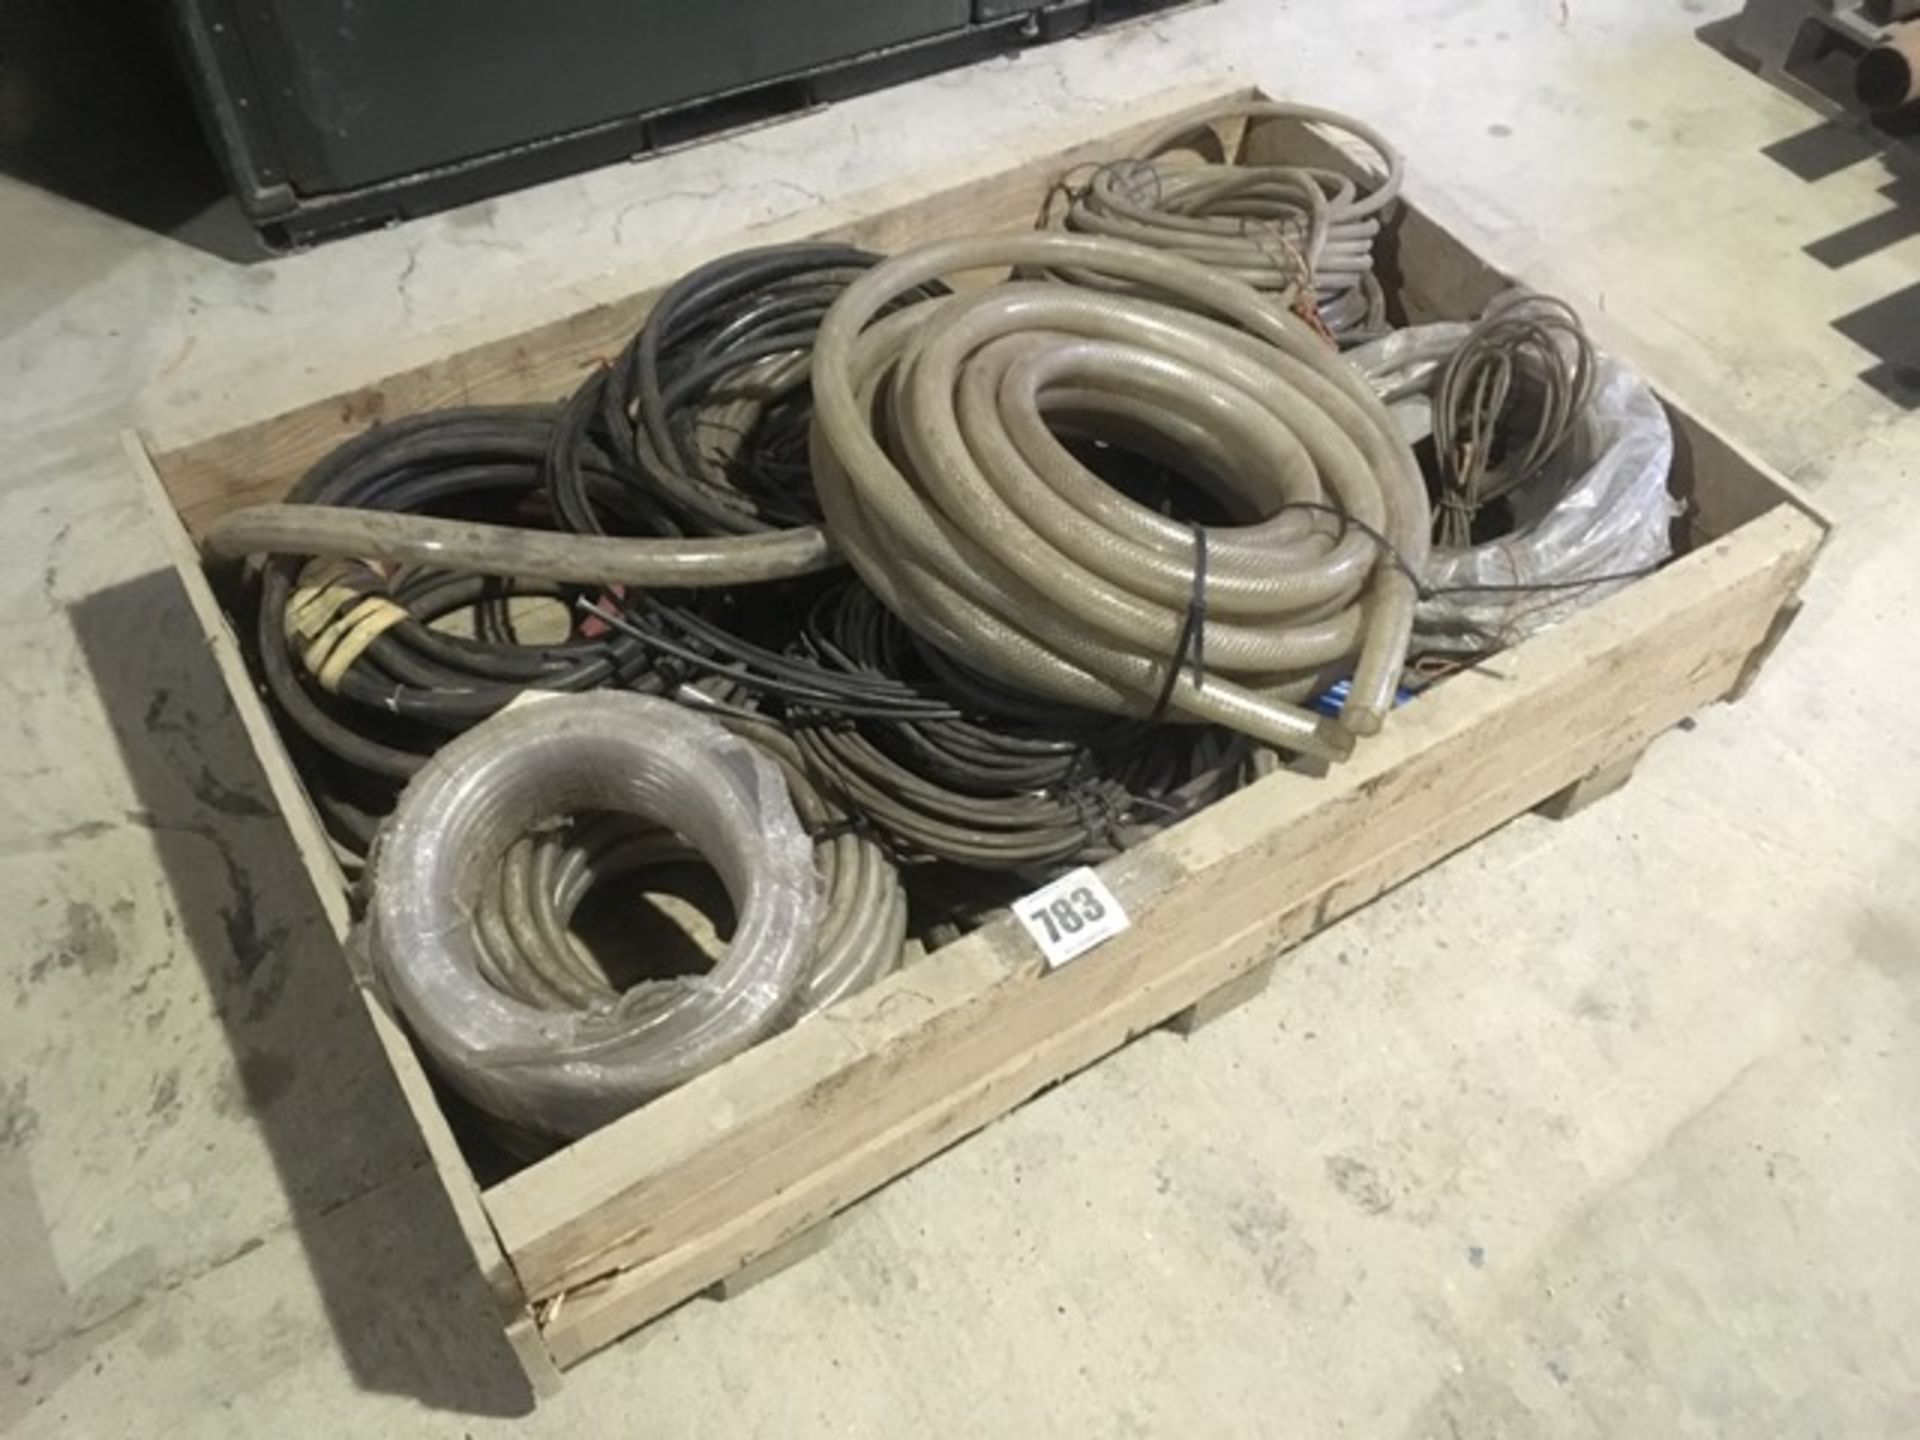 Quantity hoses